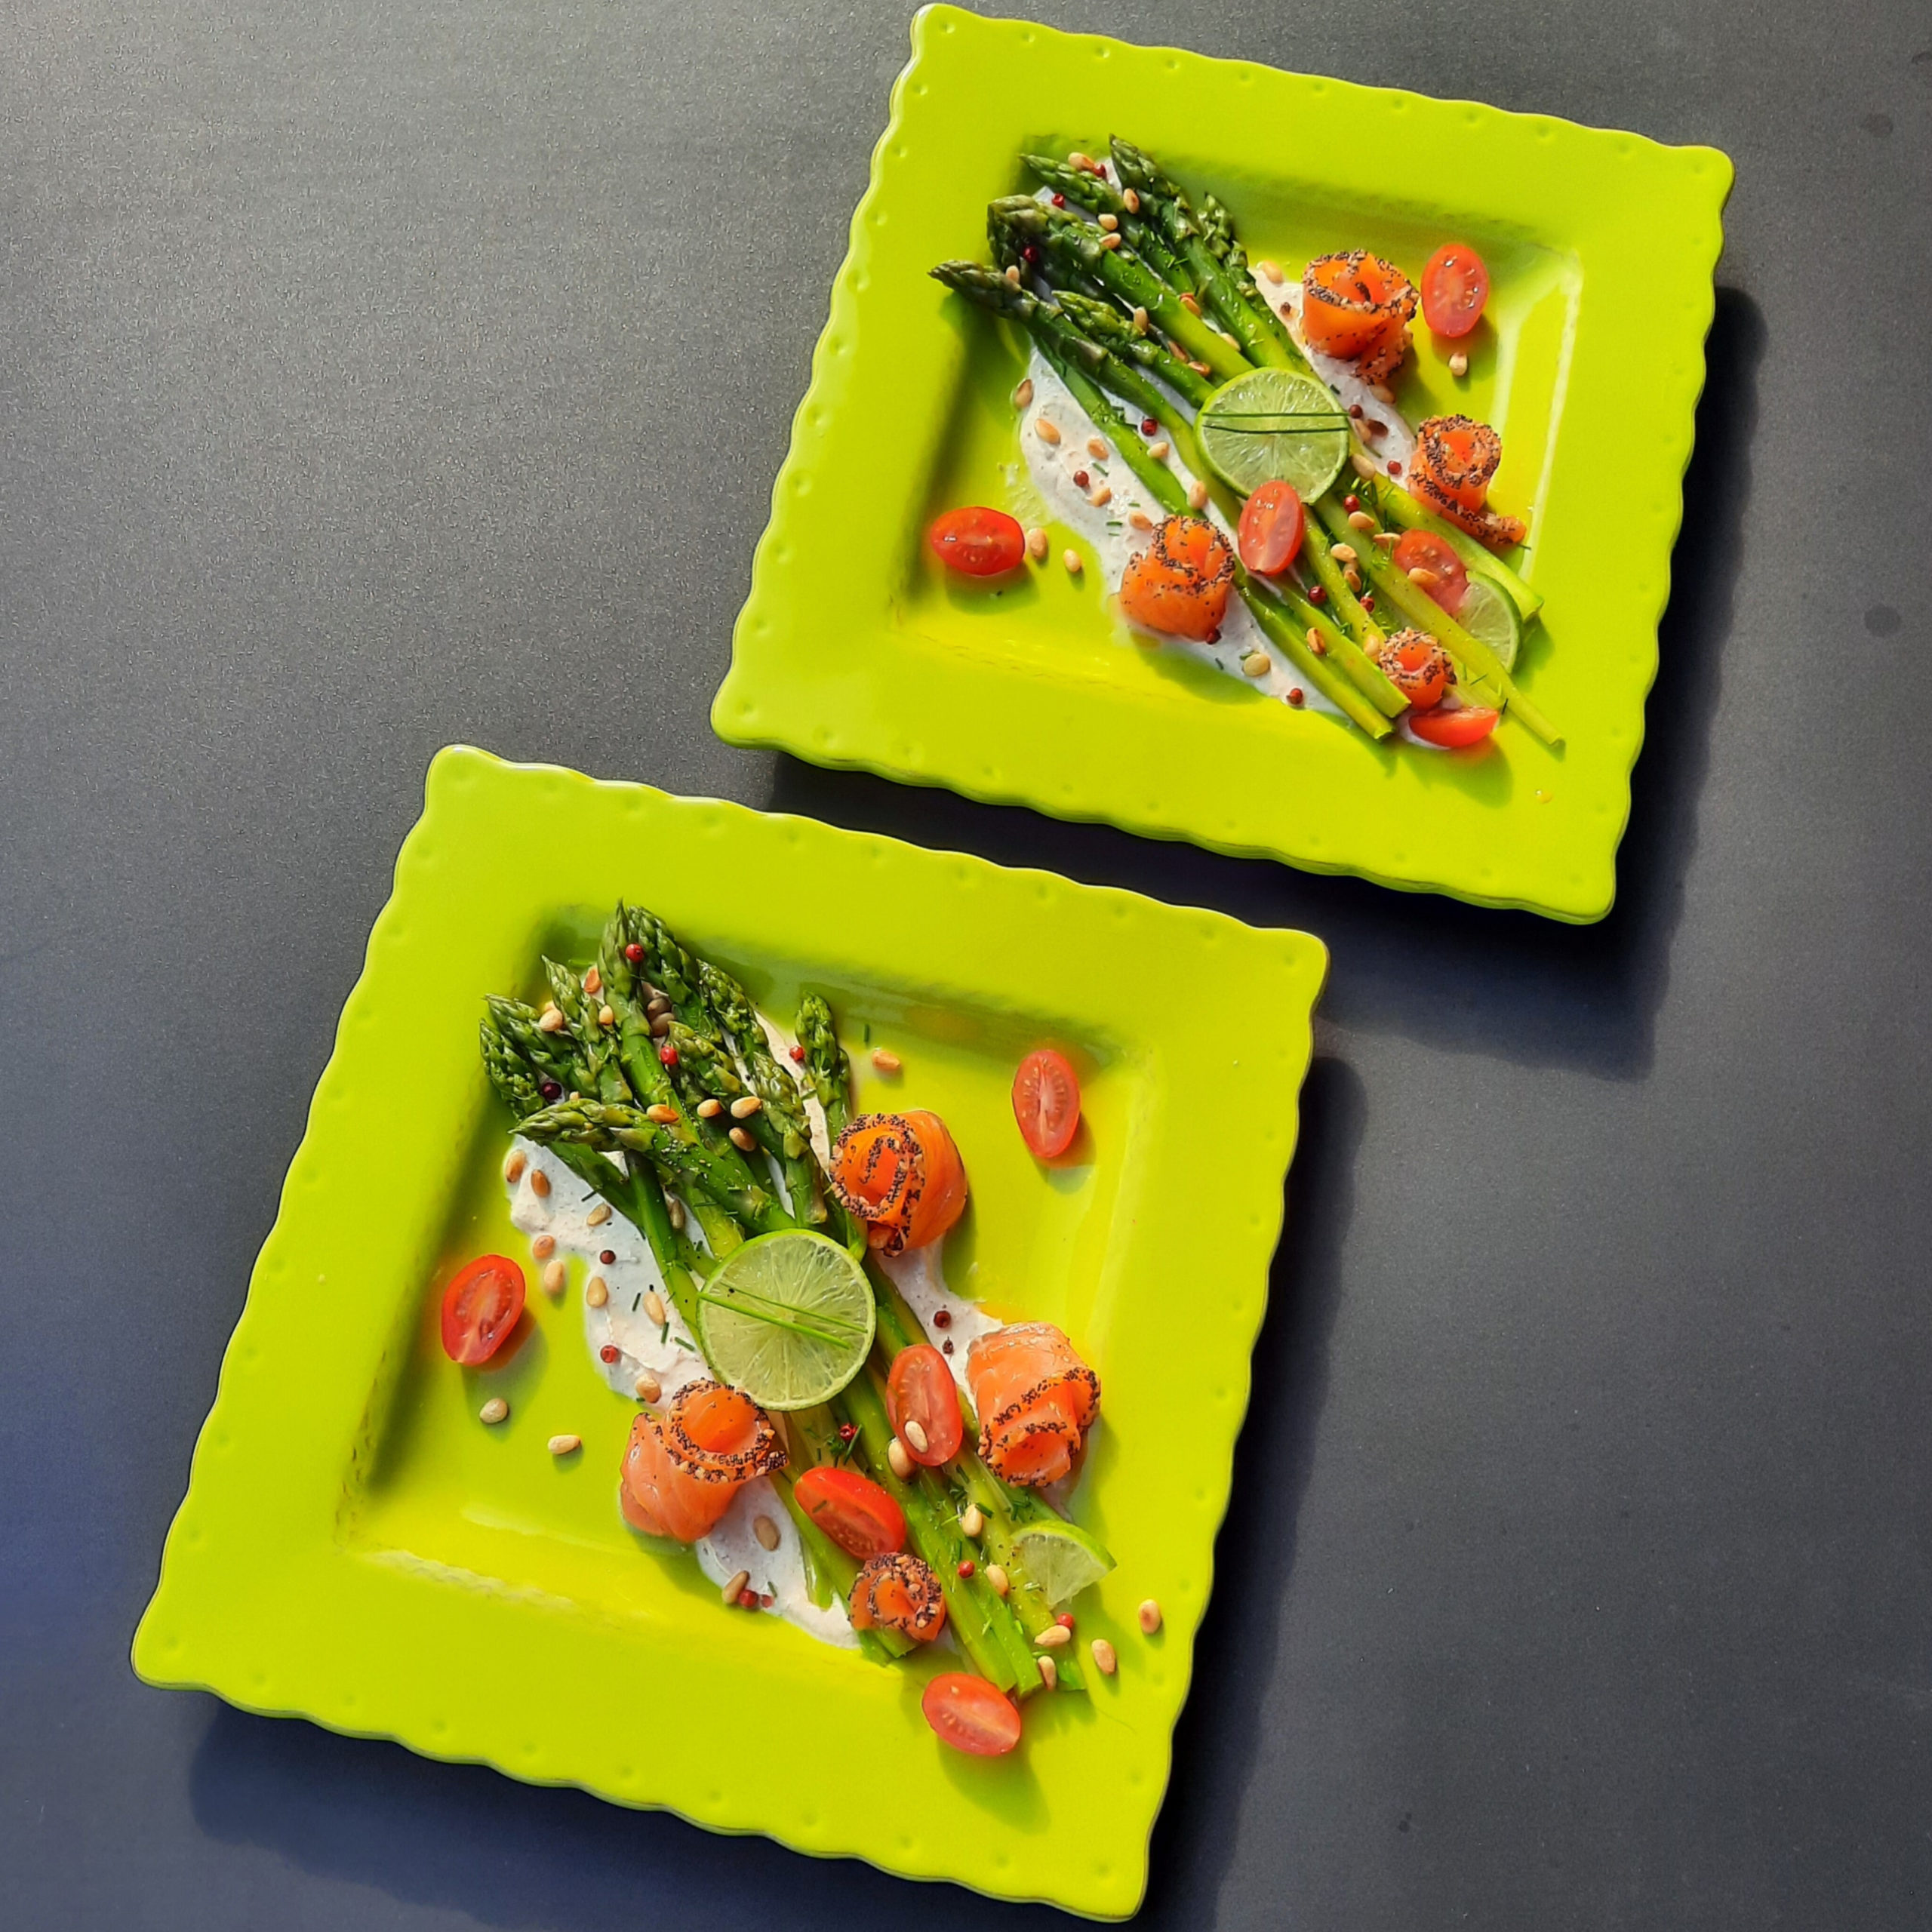 Salade asperges vertes saumon fumé